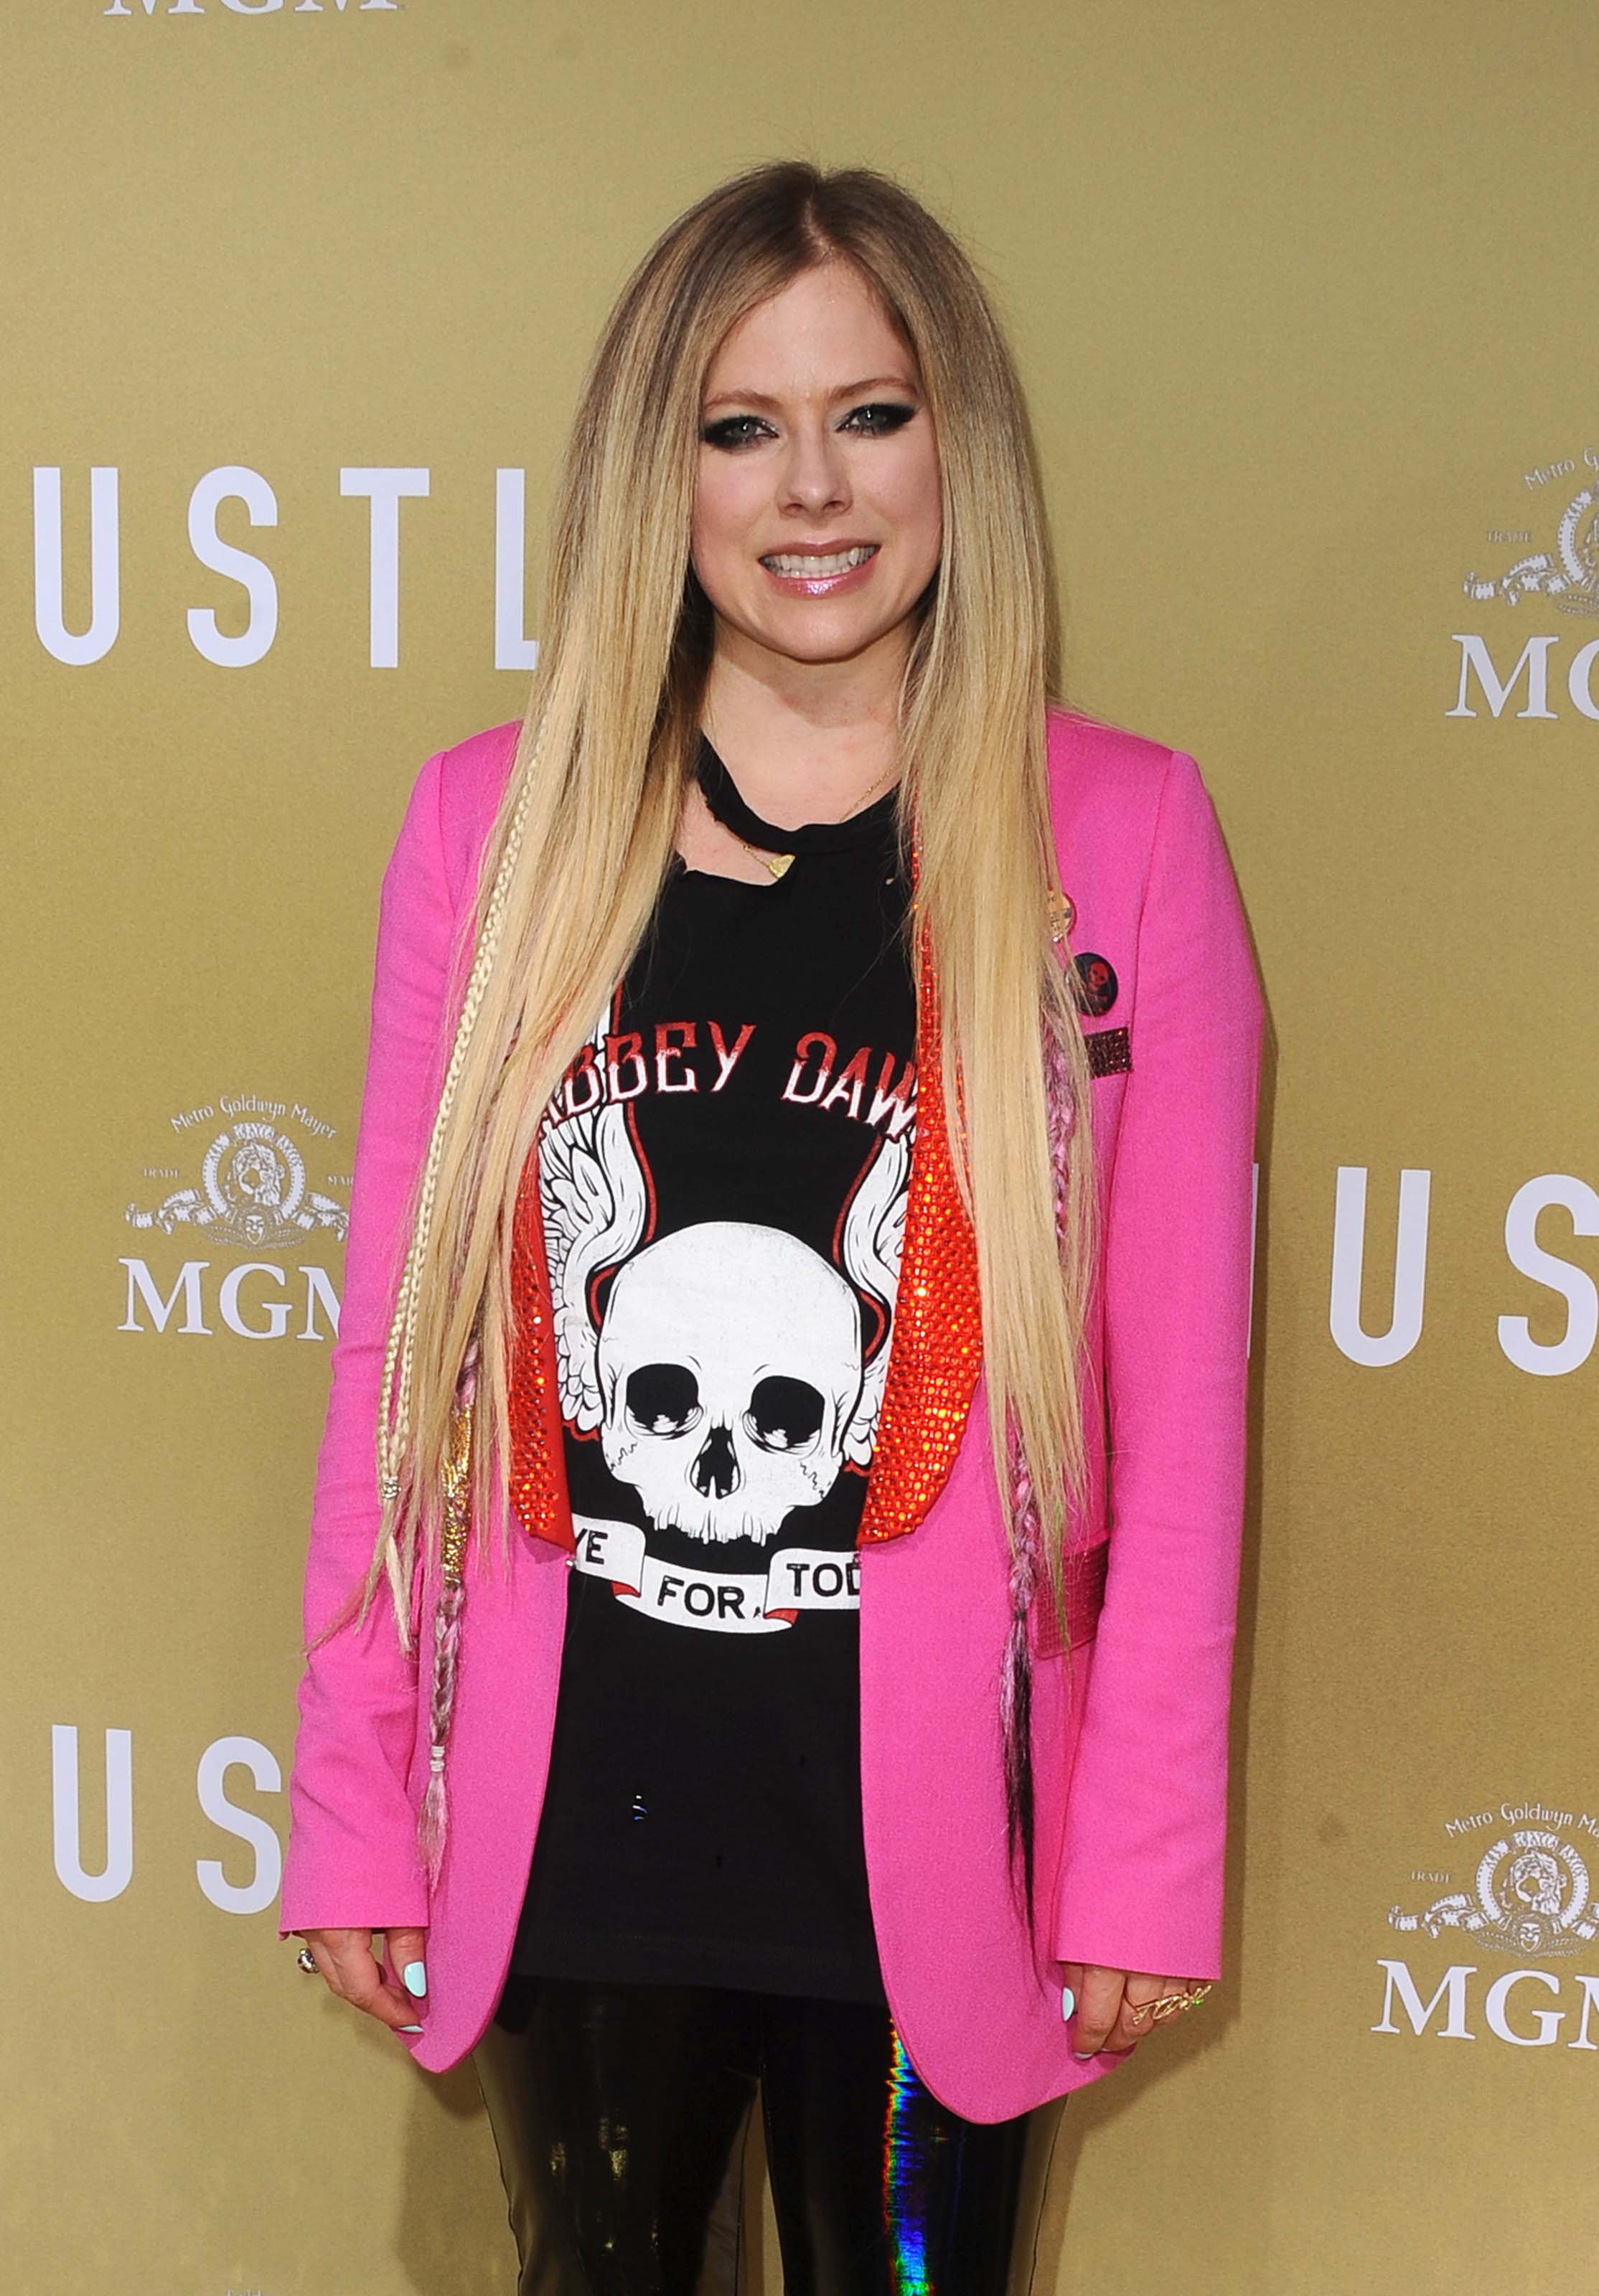 Avril Lavigne attends The Hustle premiere